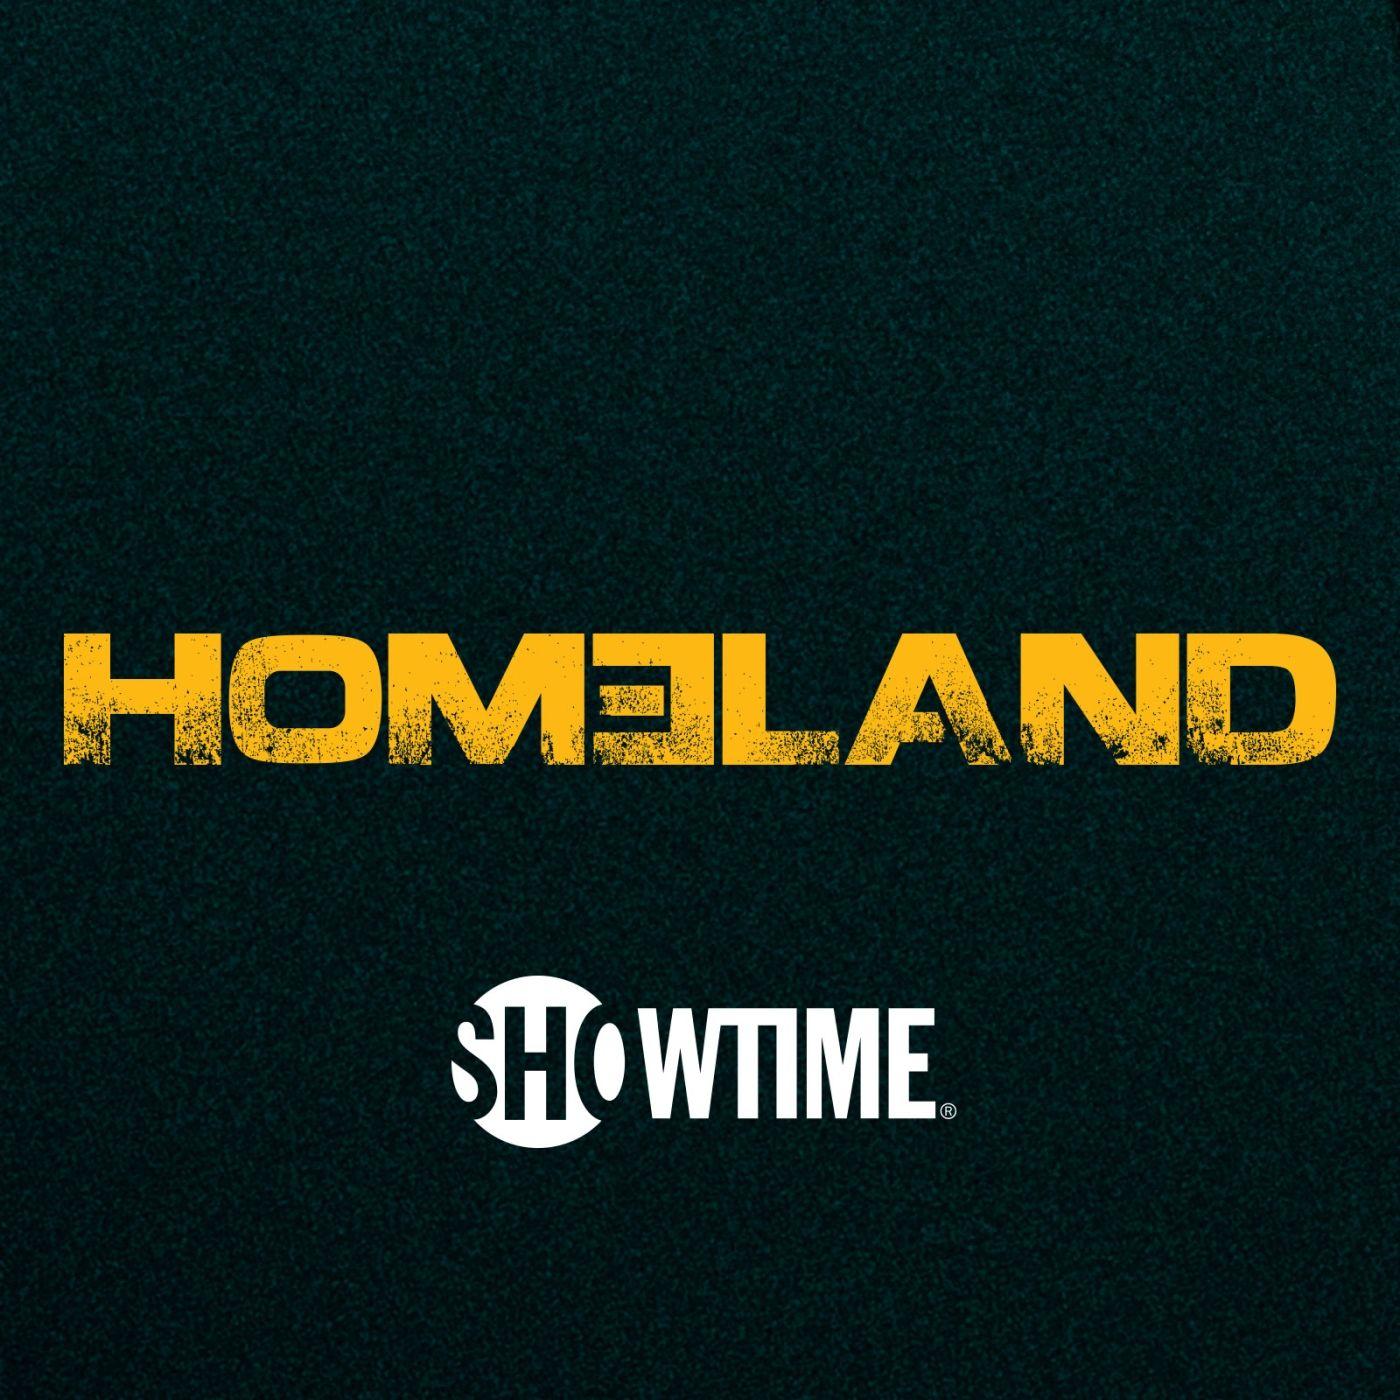 Homeland Logo - pod. fanatic. Podcast: Homeland